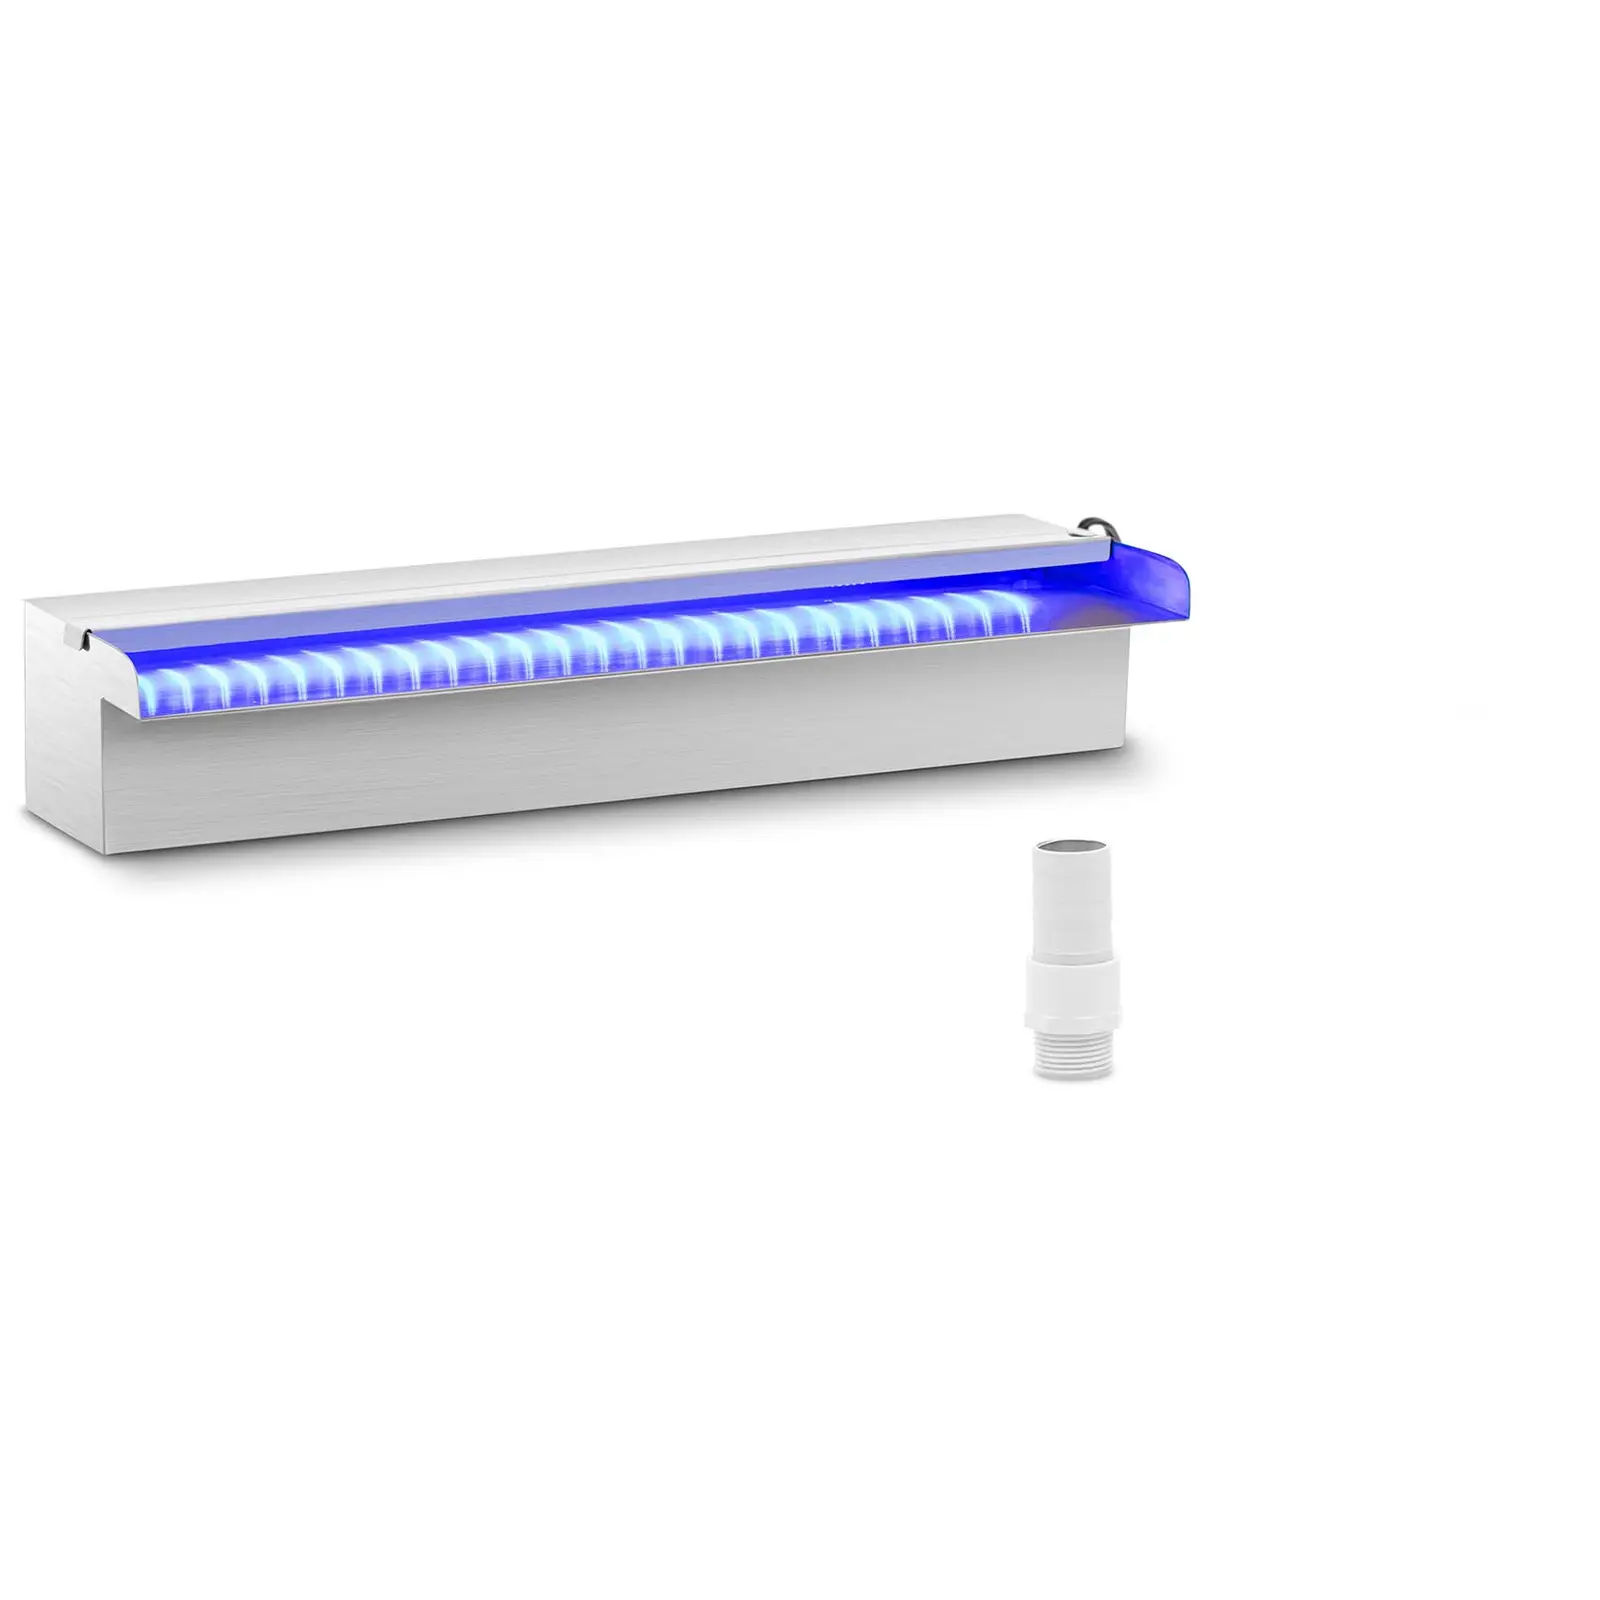 Chrlič vody - 45 cm - LED osvětlení - modrá/bílá - otevřený vývod vody